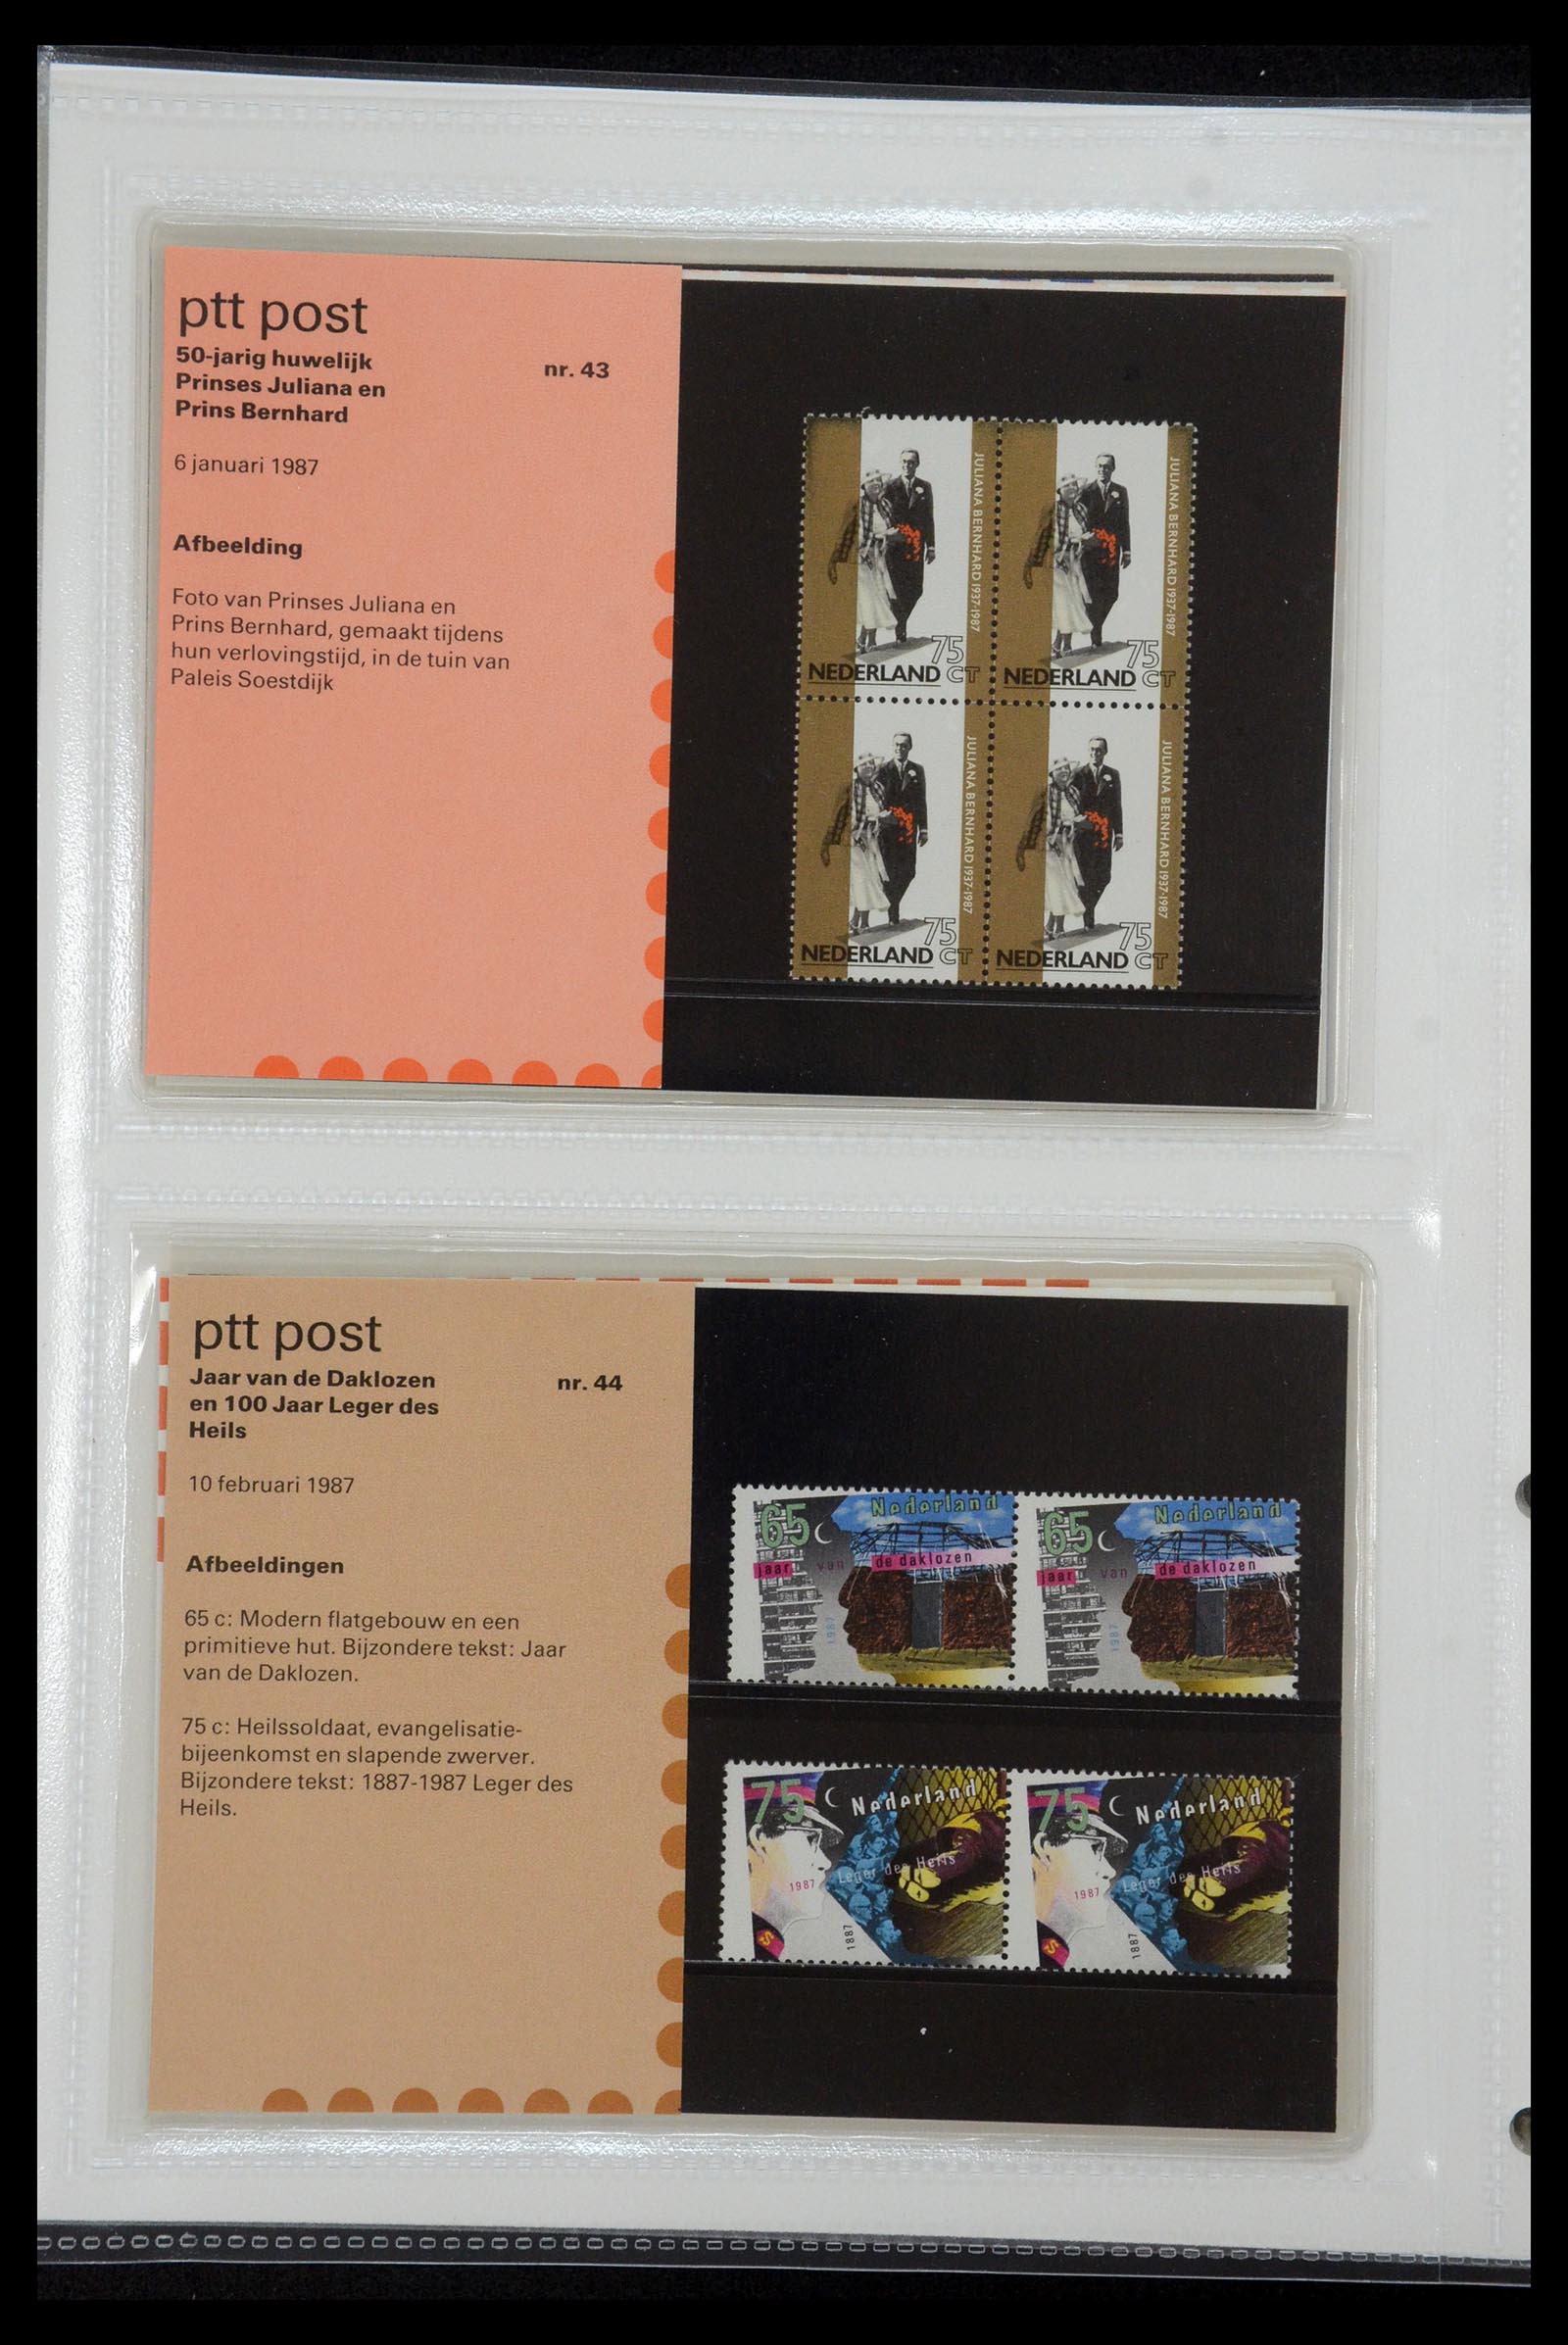 35144 022 - Stamp Collection 35144 Netherlands PTT presentation packs 1982-2021!